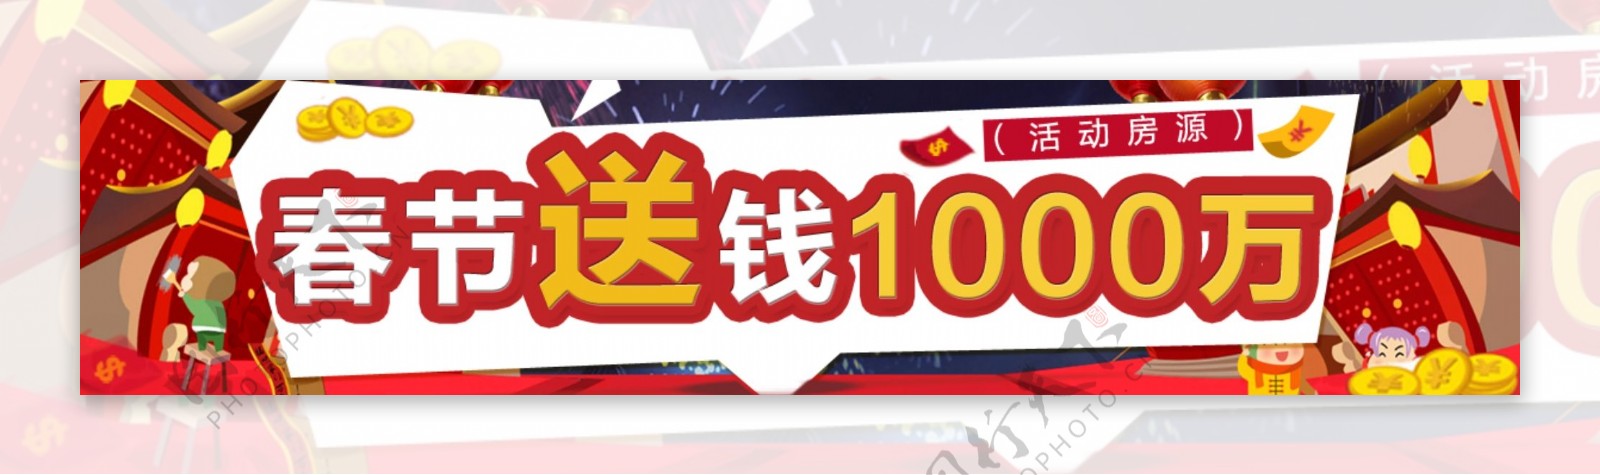 春节促销banner